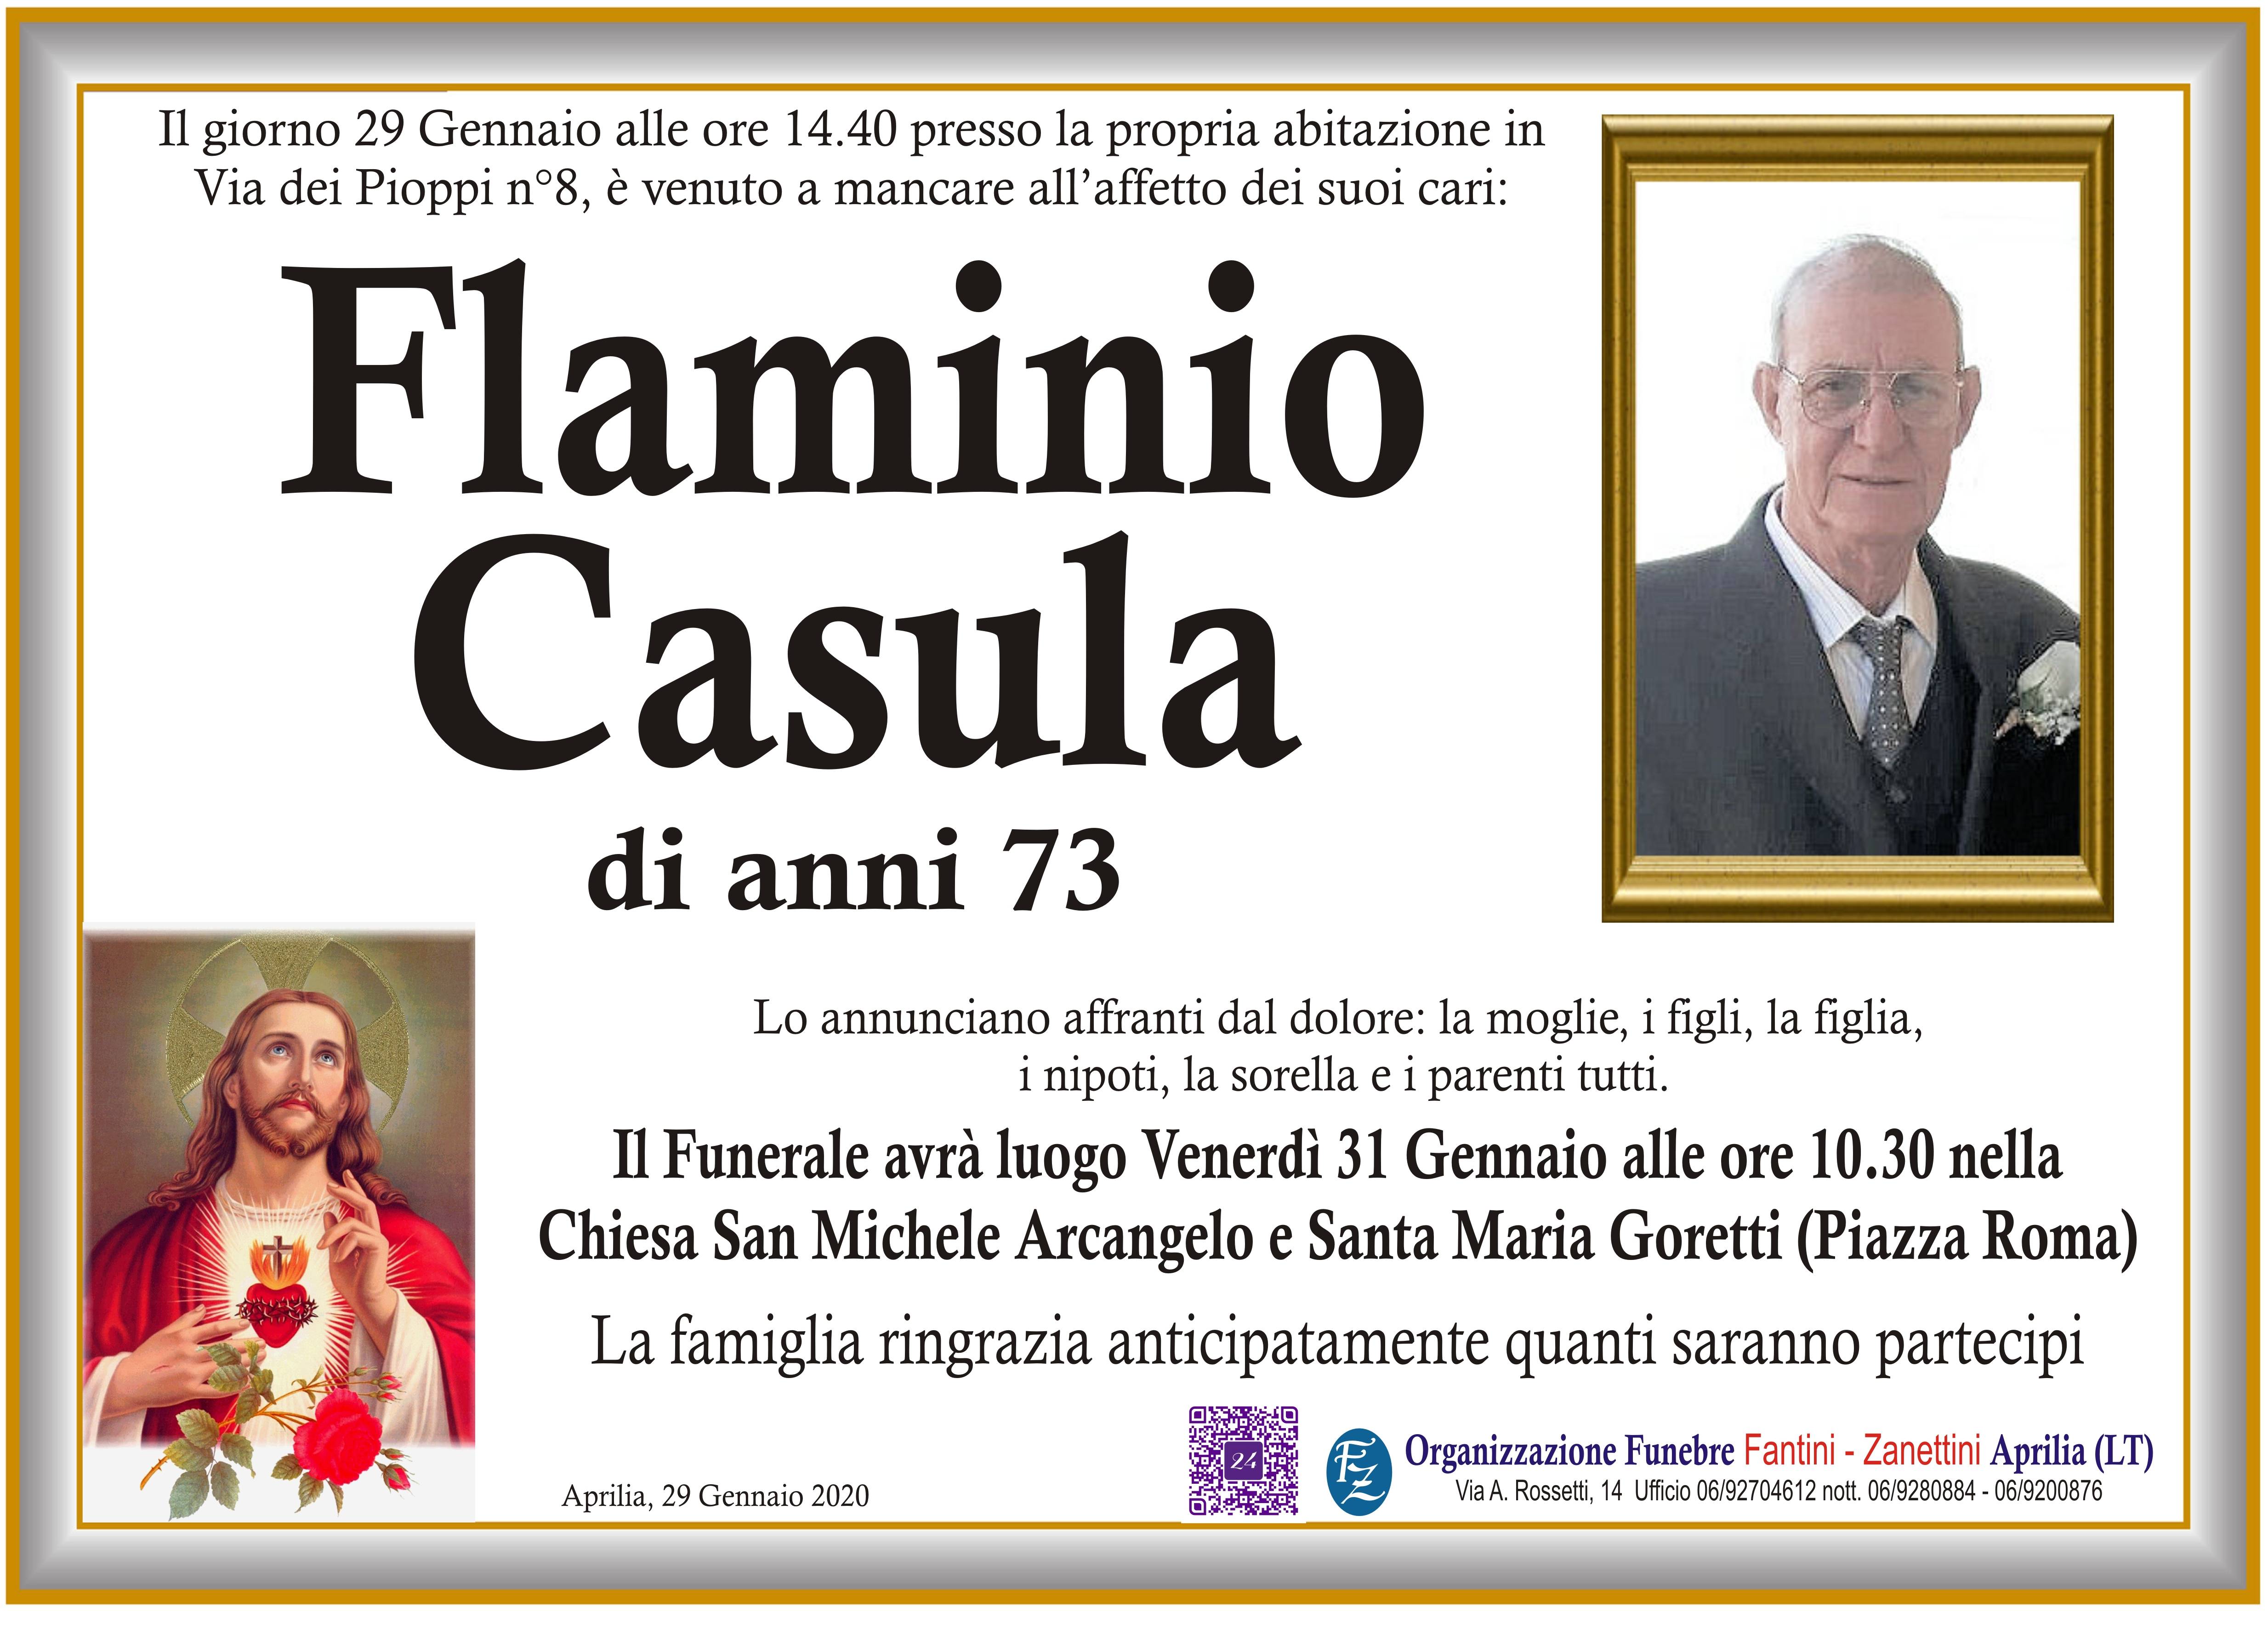 Flaminio Casula